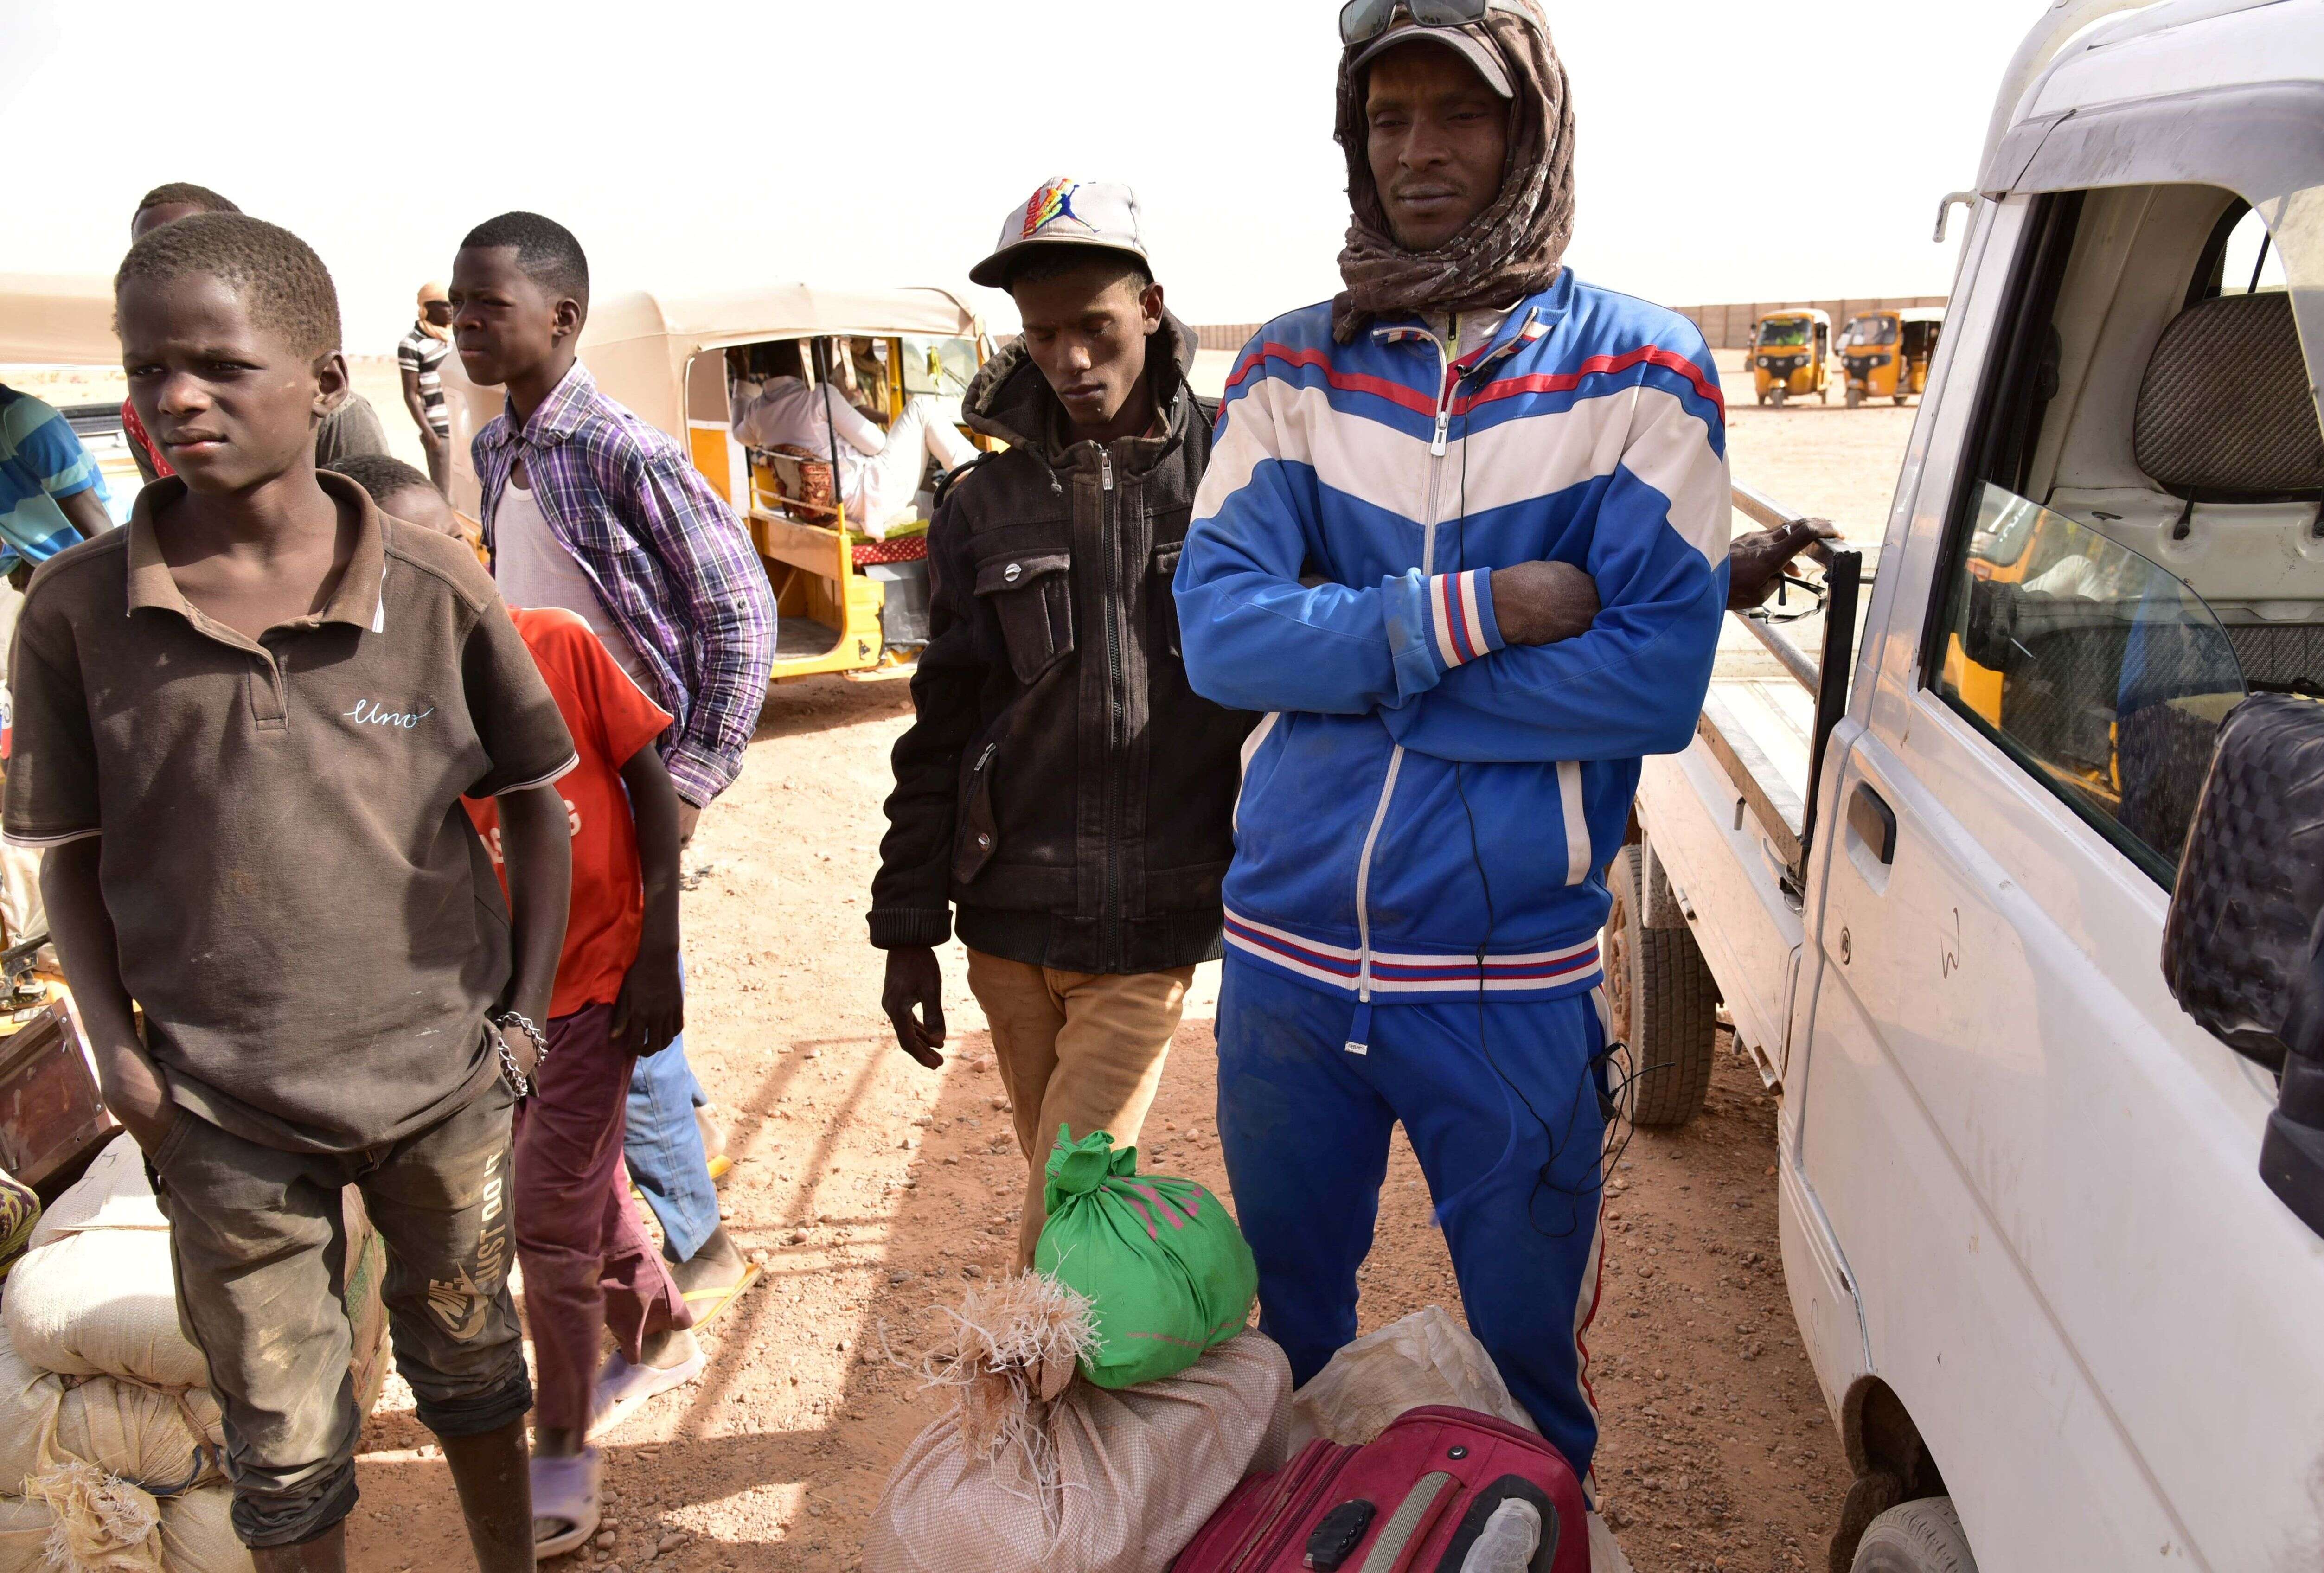 Des Africains de l'Ouest revenant au Niger après avoir fui la Libye à cause de groupes armés, à leur arrivée à Agadez, le 31 mars 2017, après leur tentative ratée de rejoindre l'Europe en traversant la mer Méditerranée. (Crédit photo ISSOUF SANOGO/AFP via Getty Images)